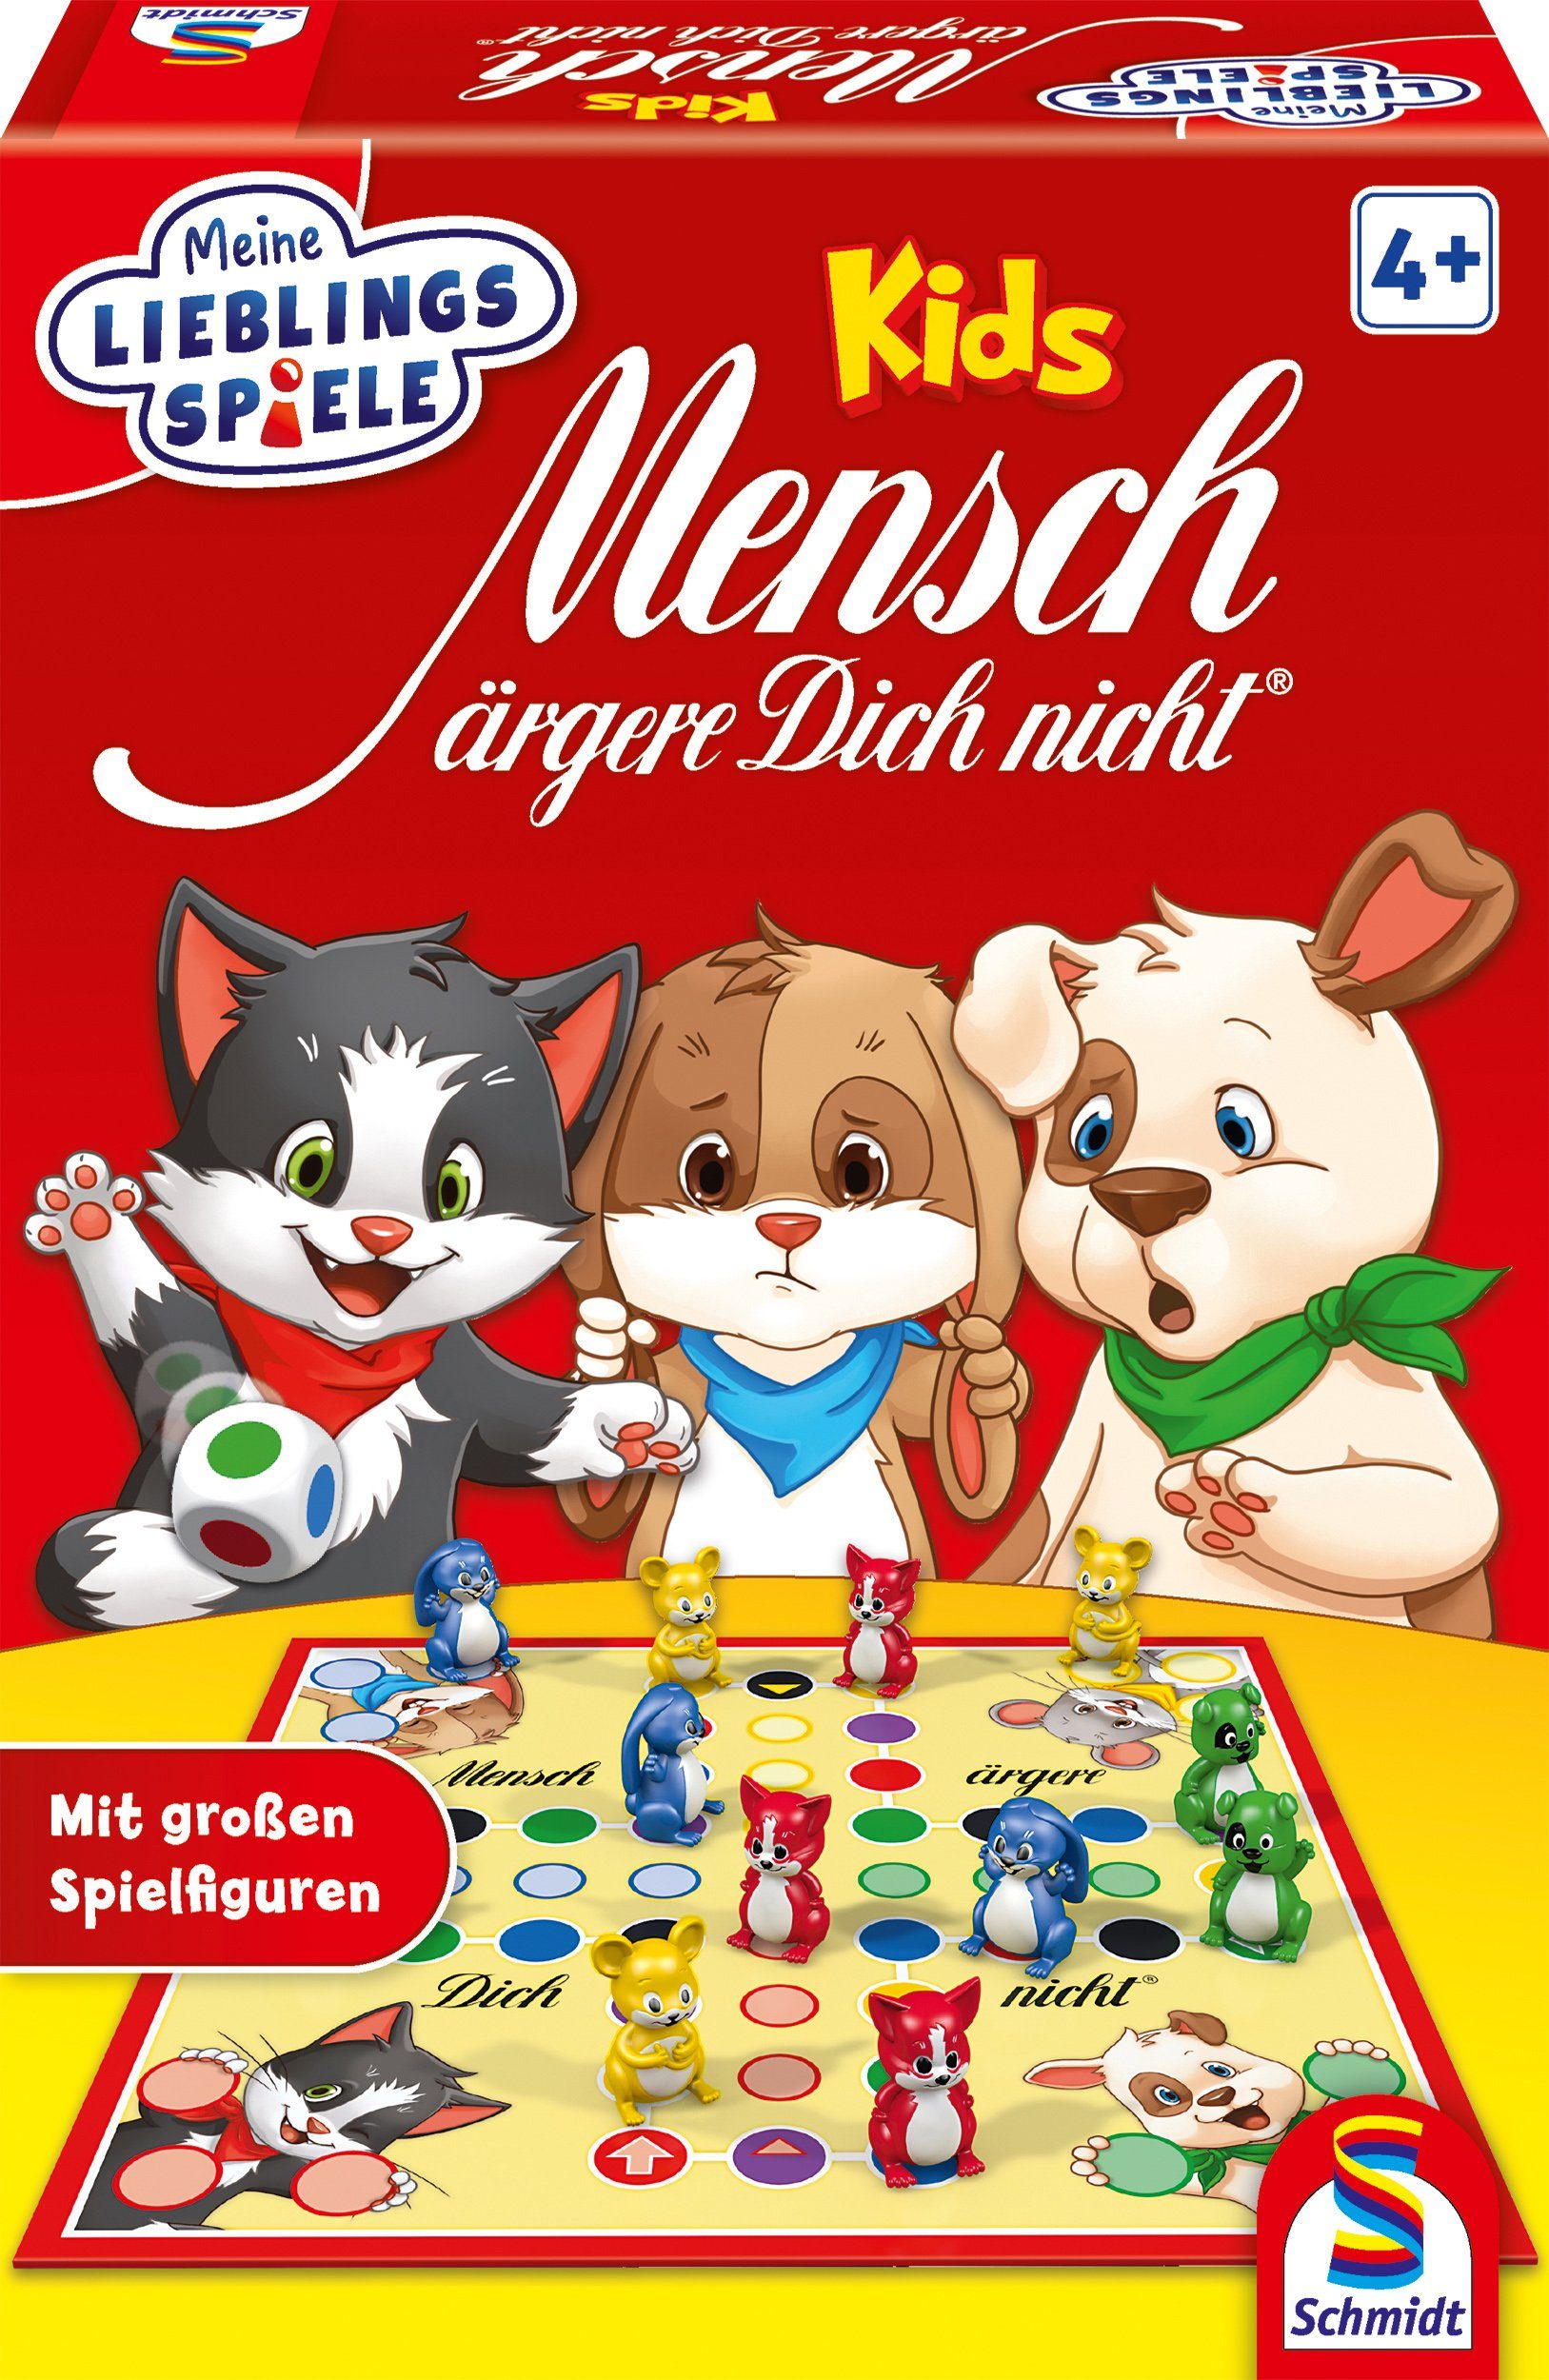 Schmidt Игры Spiel, Mensch ärgere dich nicht® Kids, Made in Germany